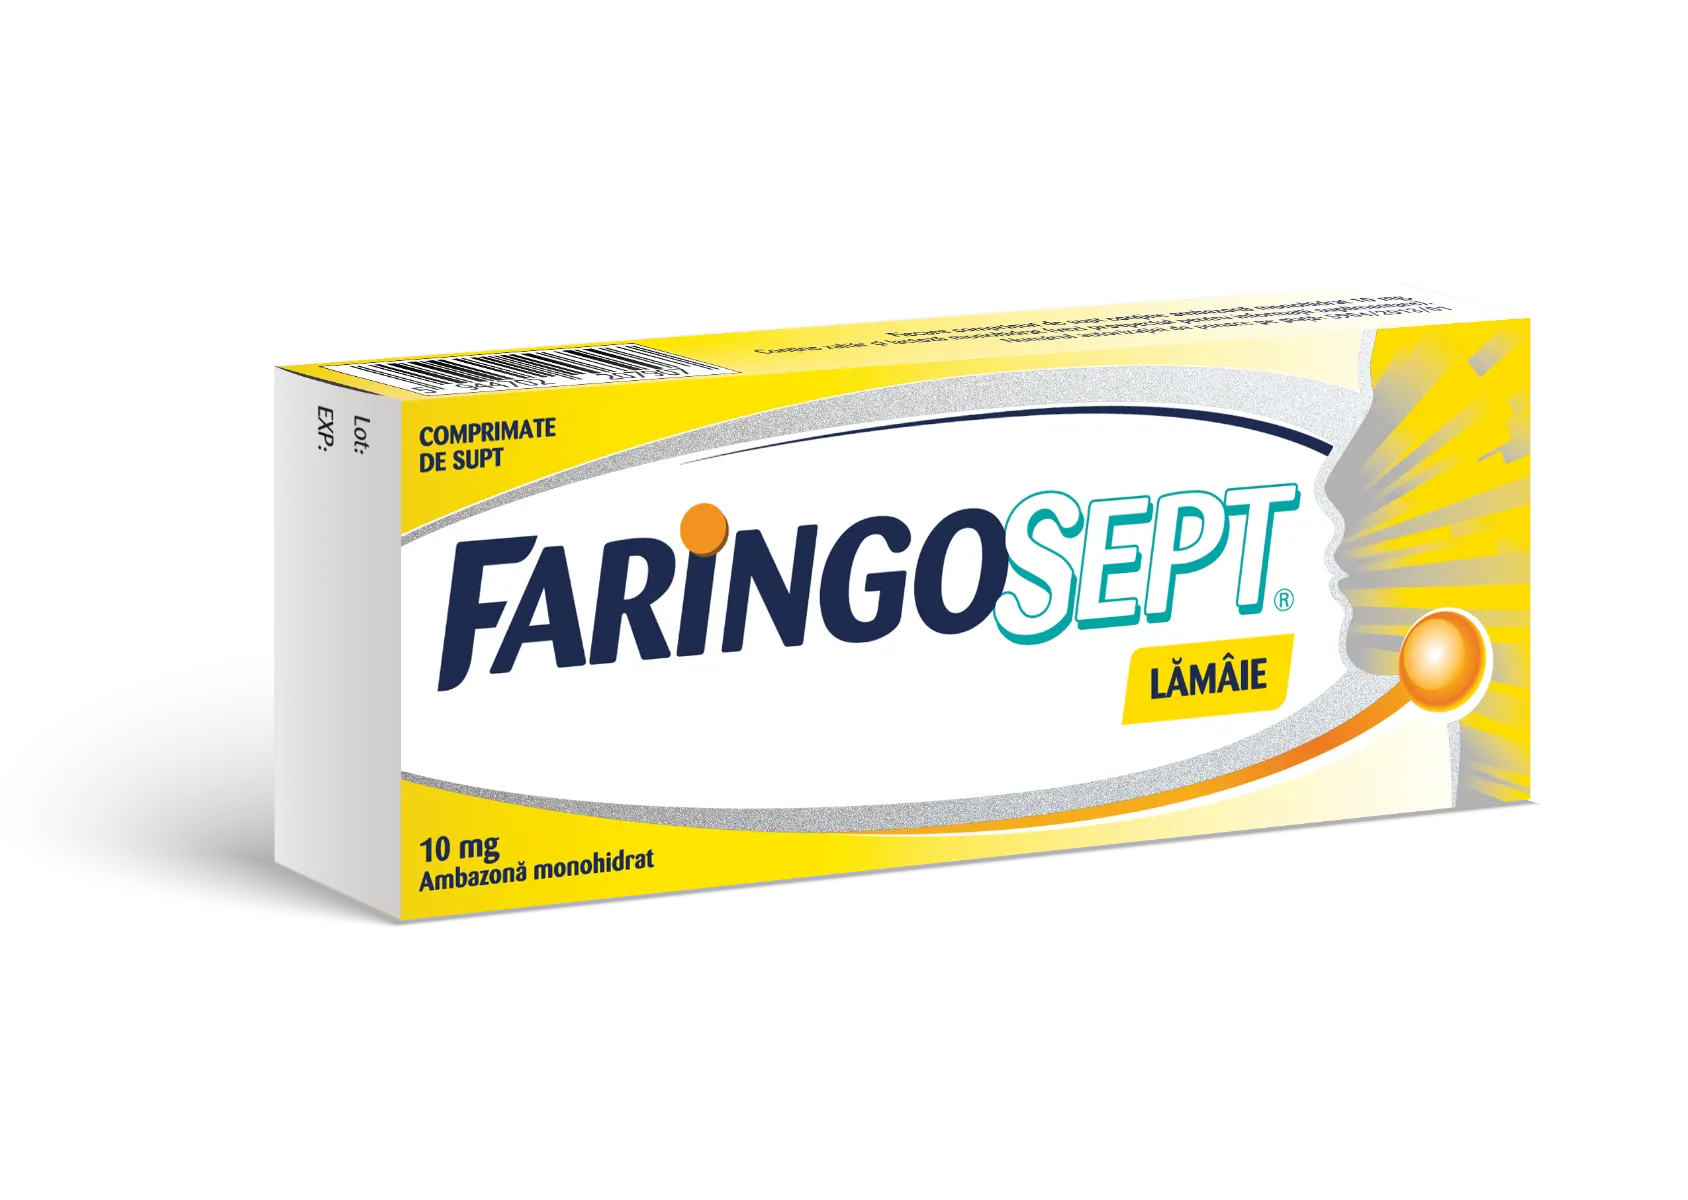 Faringosept L aroma de lamaie 10 mg, 10 comprimate, Terapia